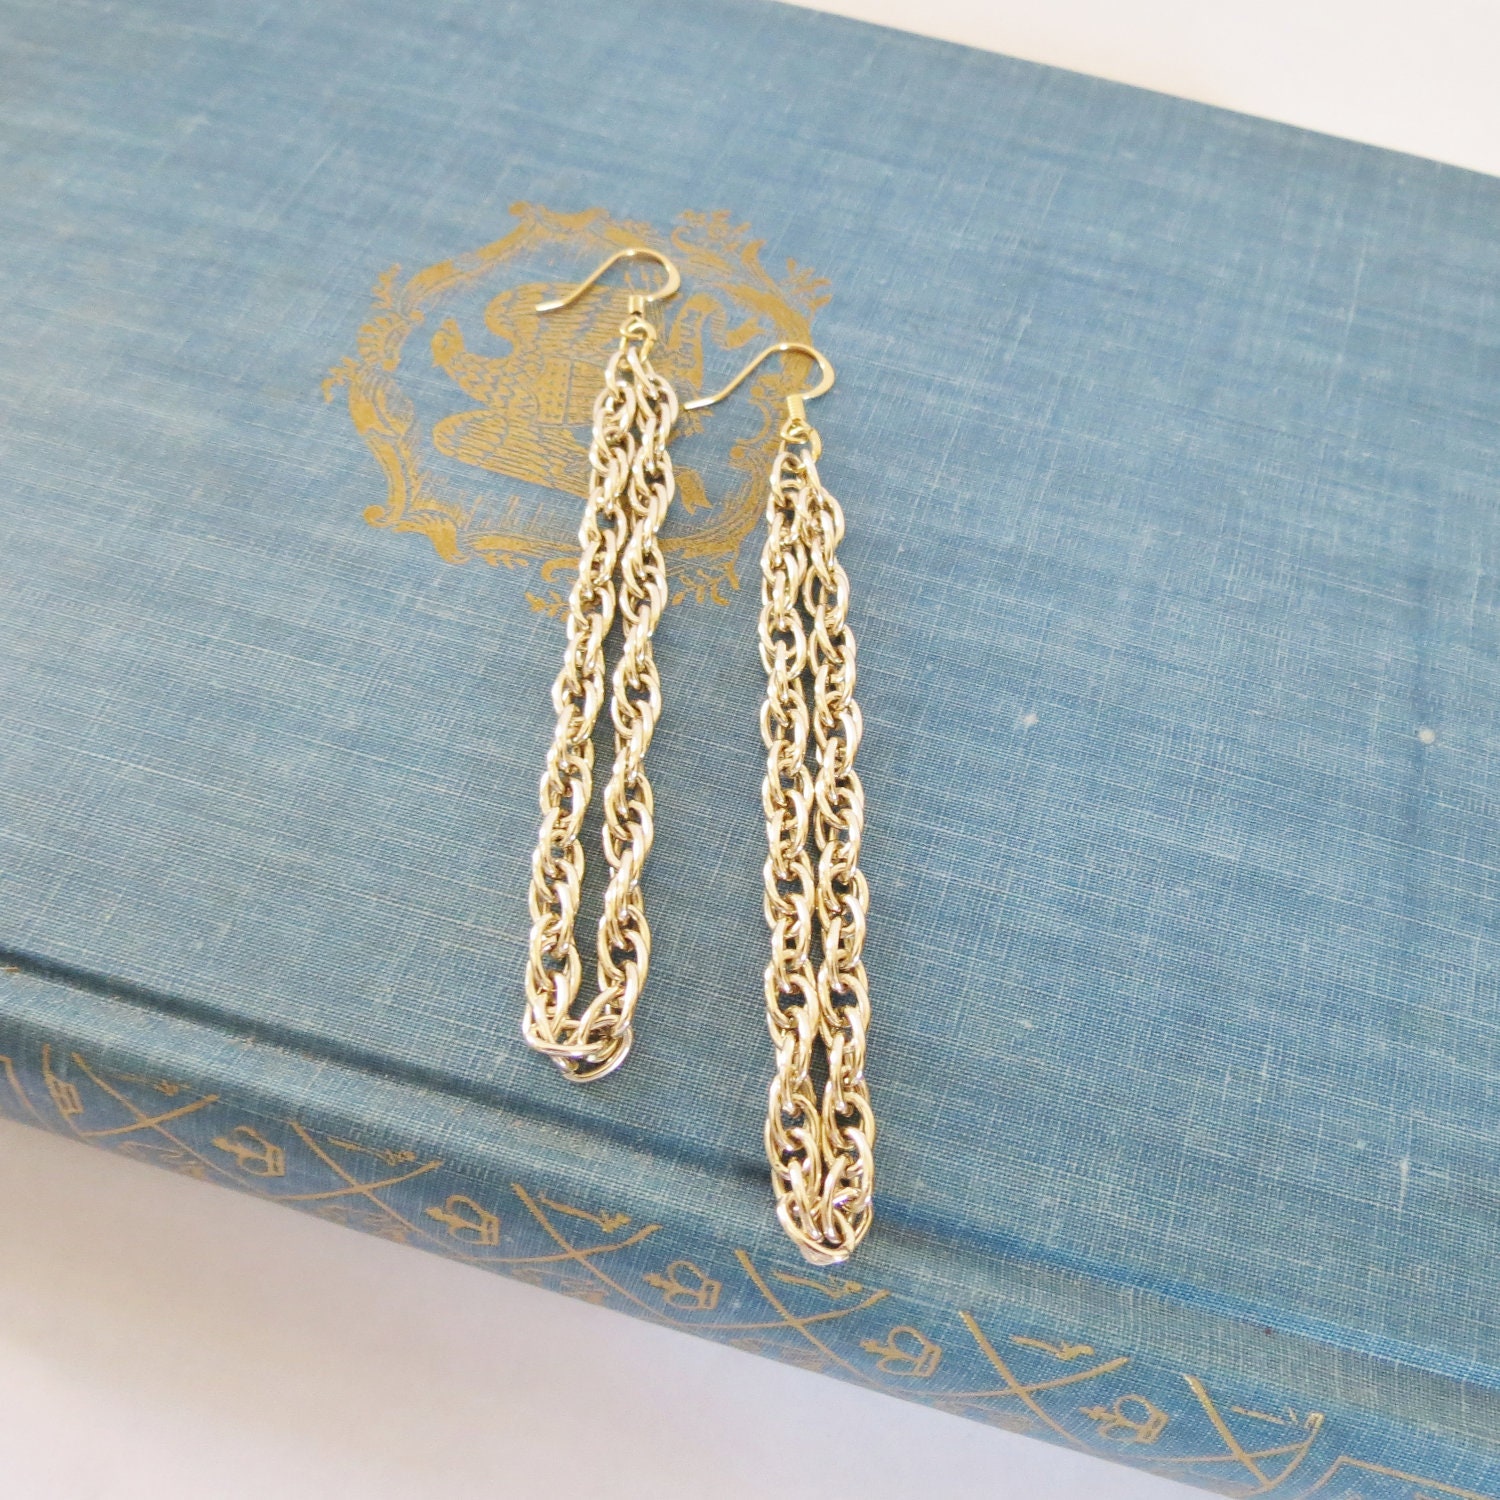 Vintage Inspired Gold Chain Loop Handmade Earrings - atticphilosopher